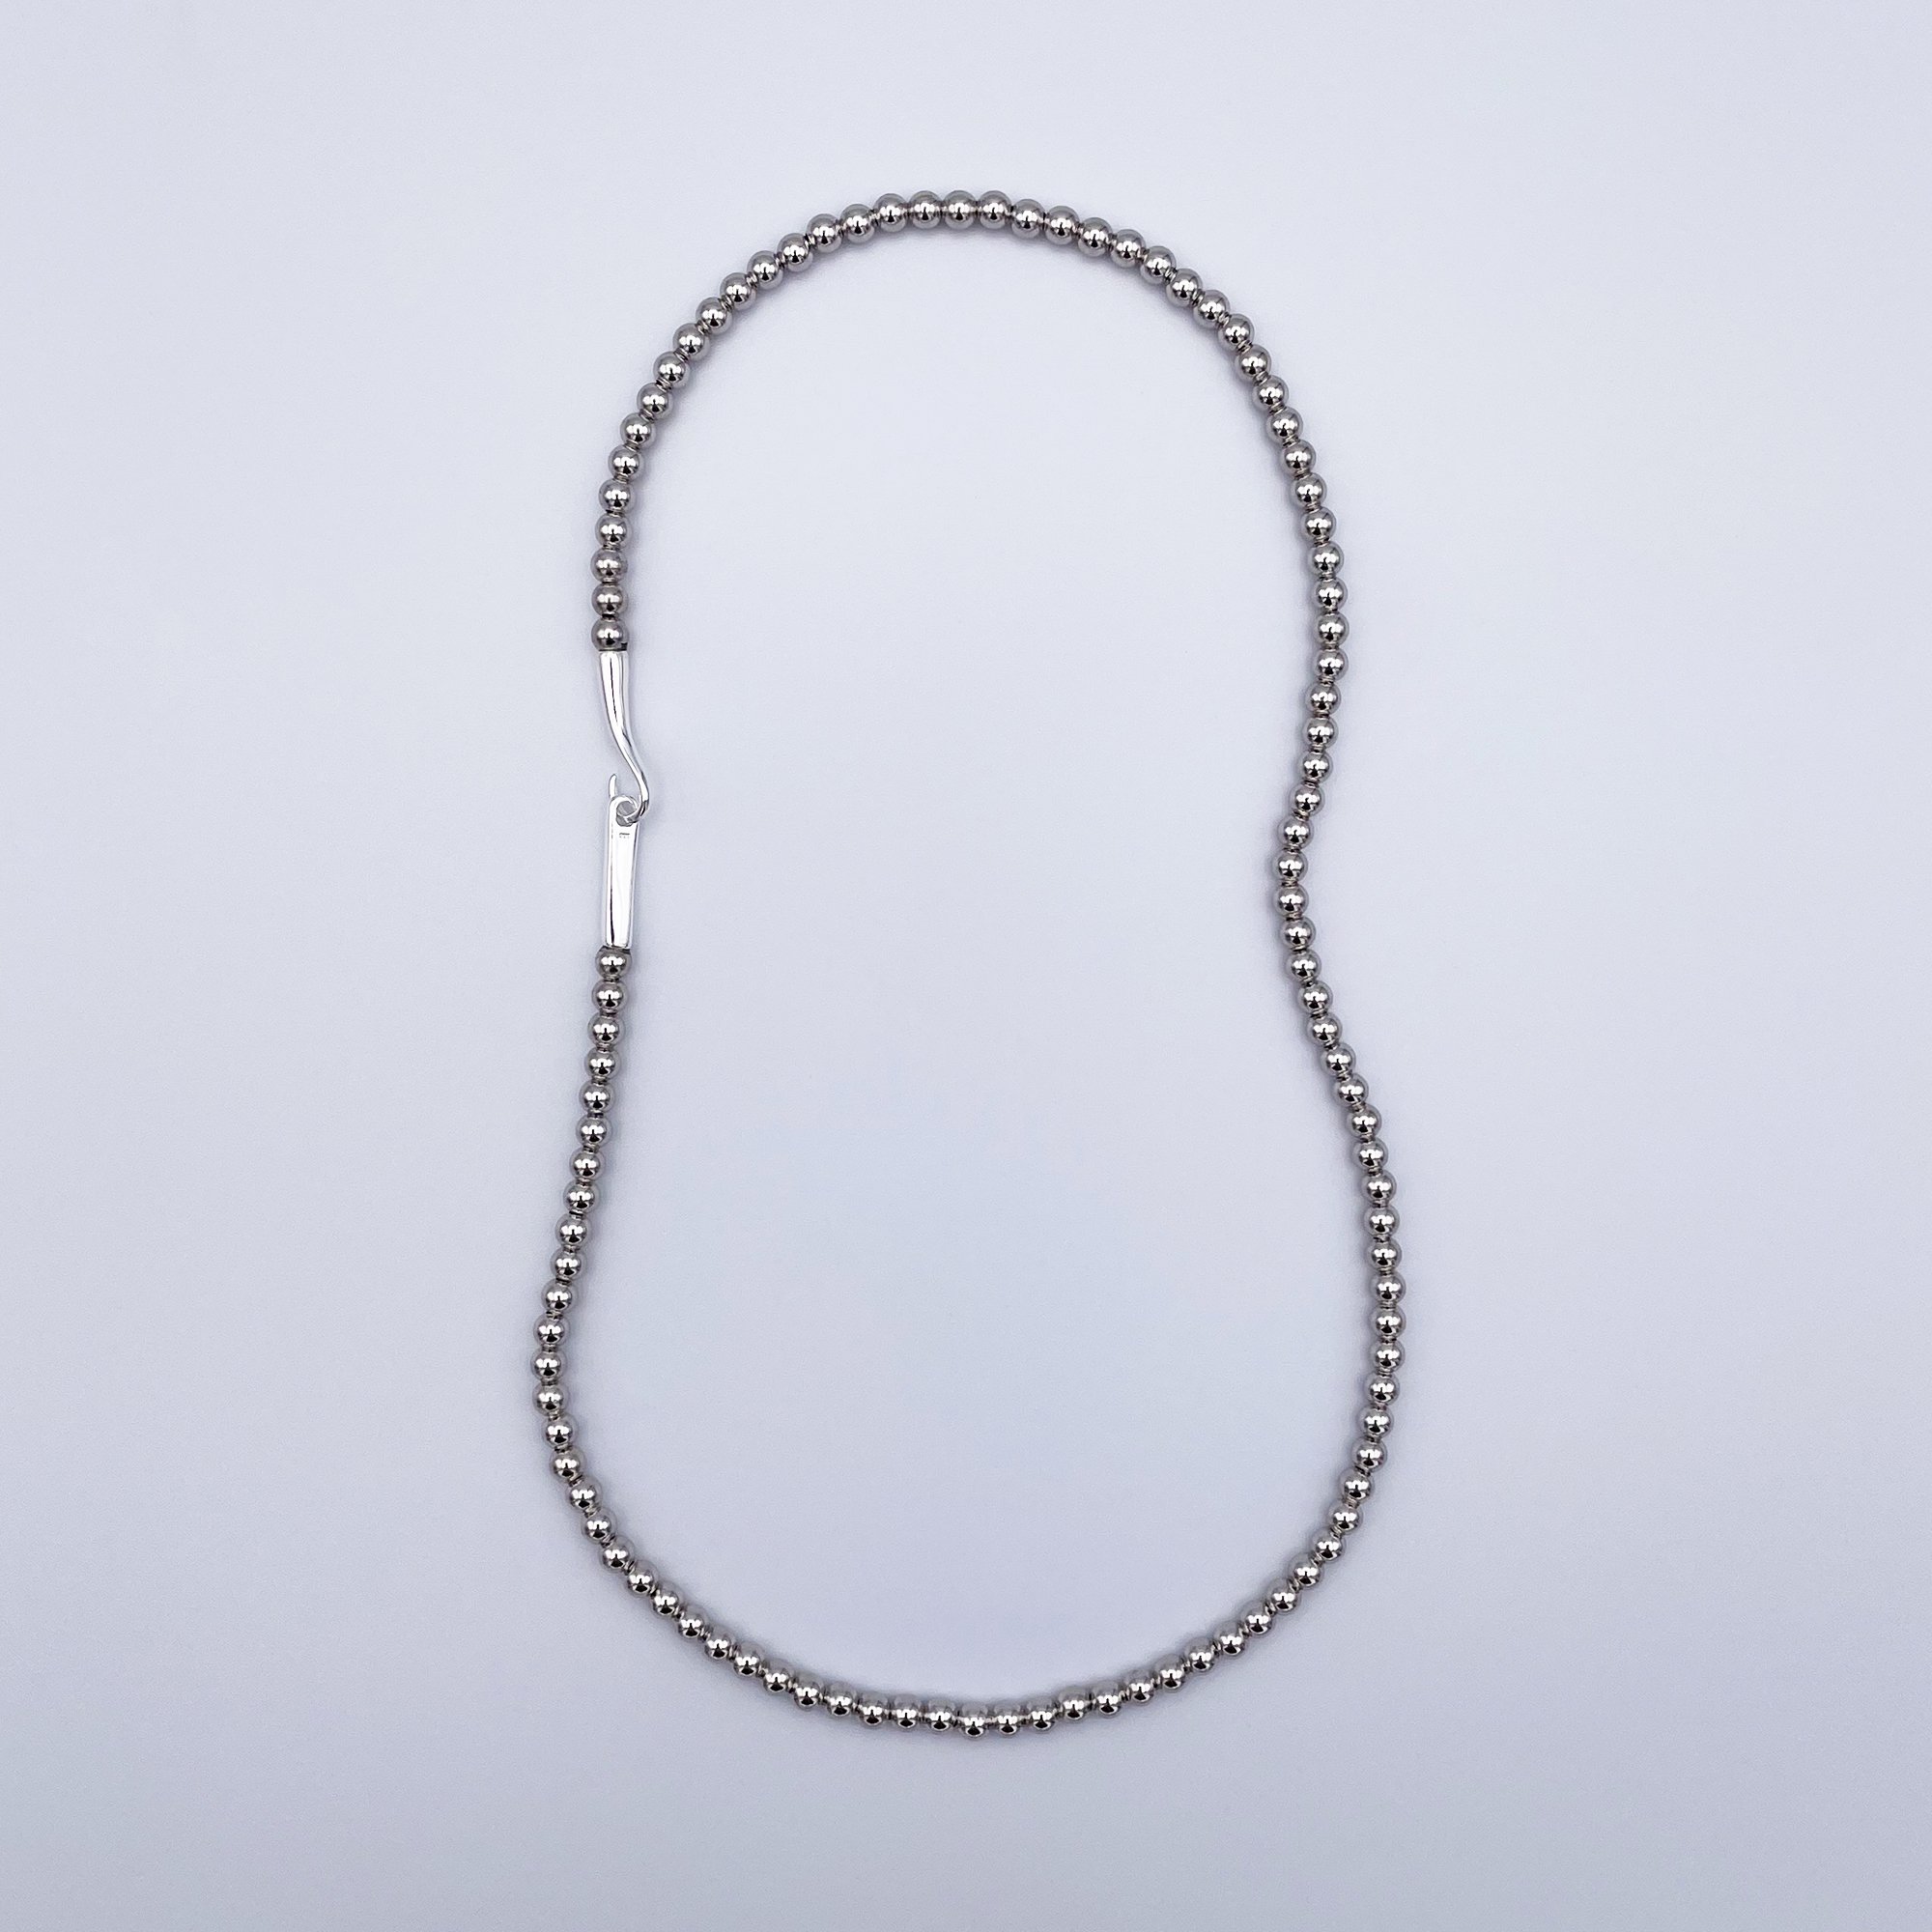 vihod - silver beads necklace 925